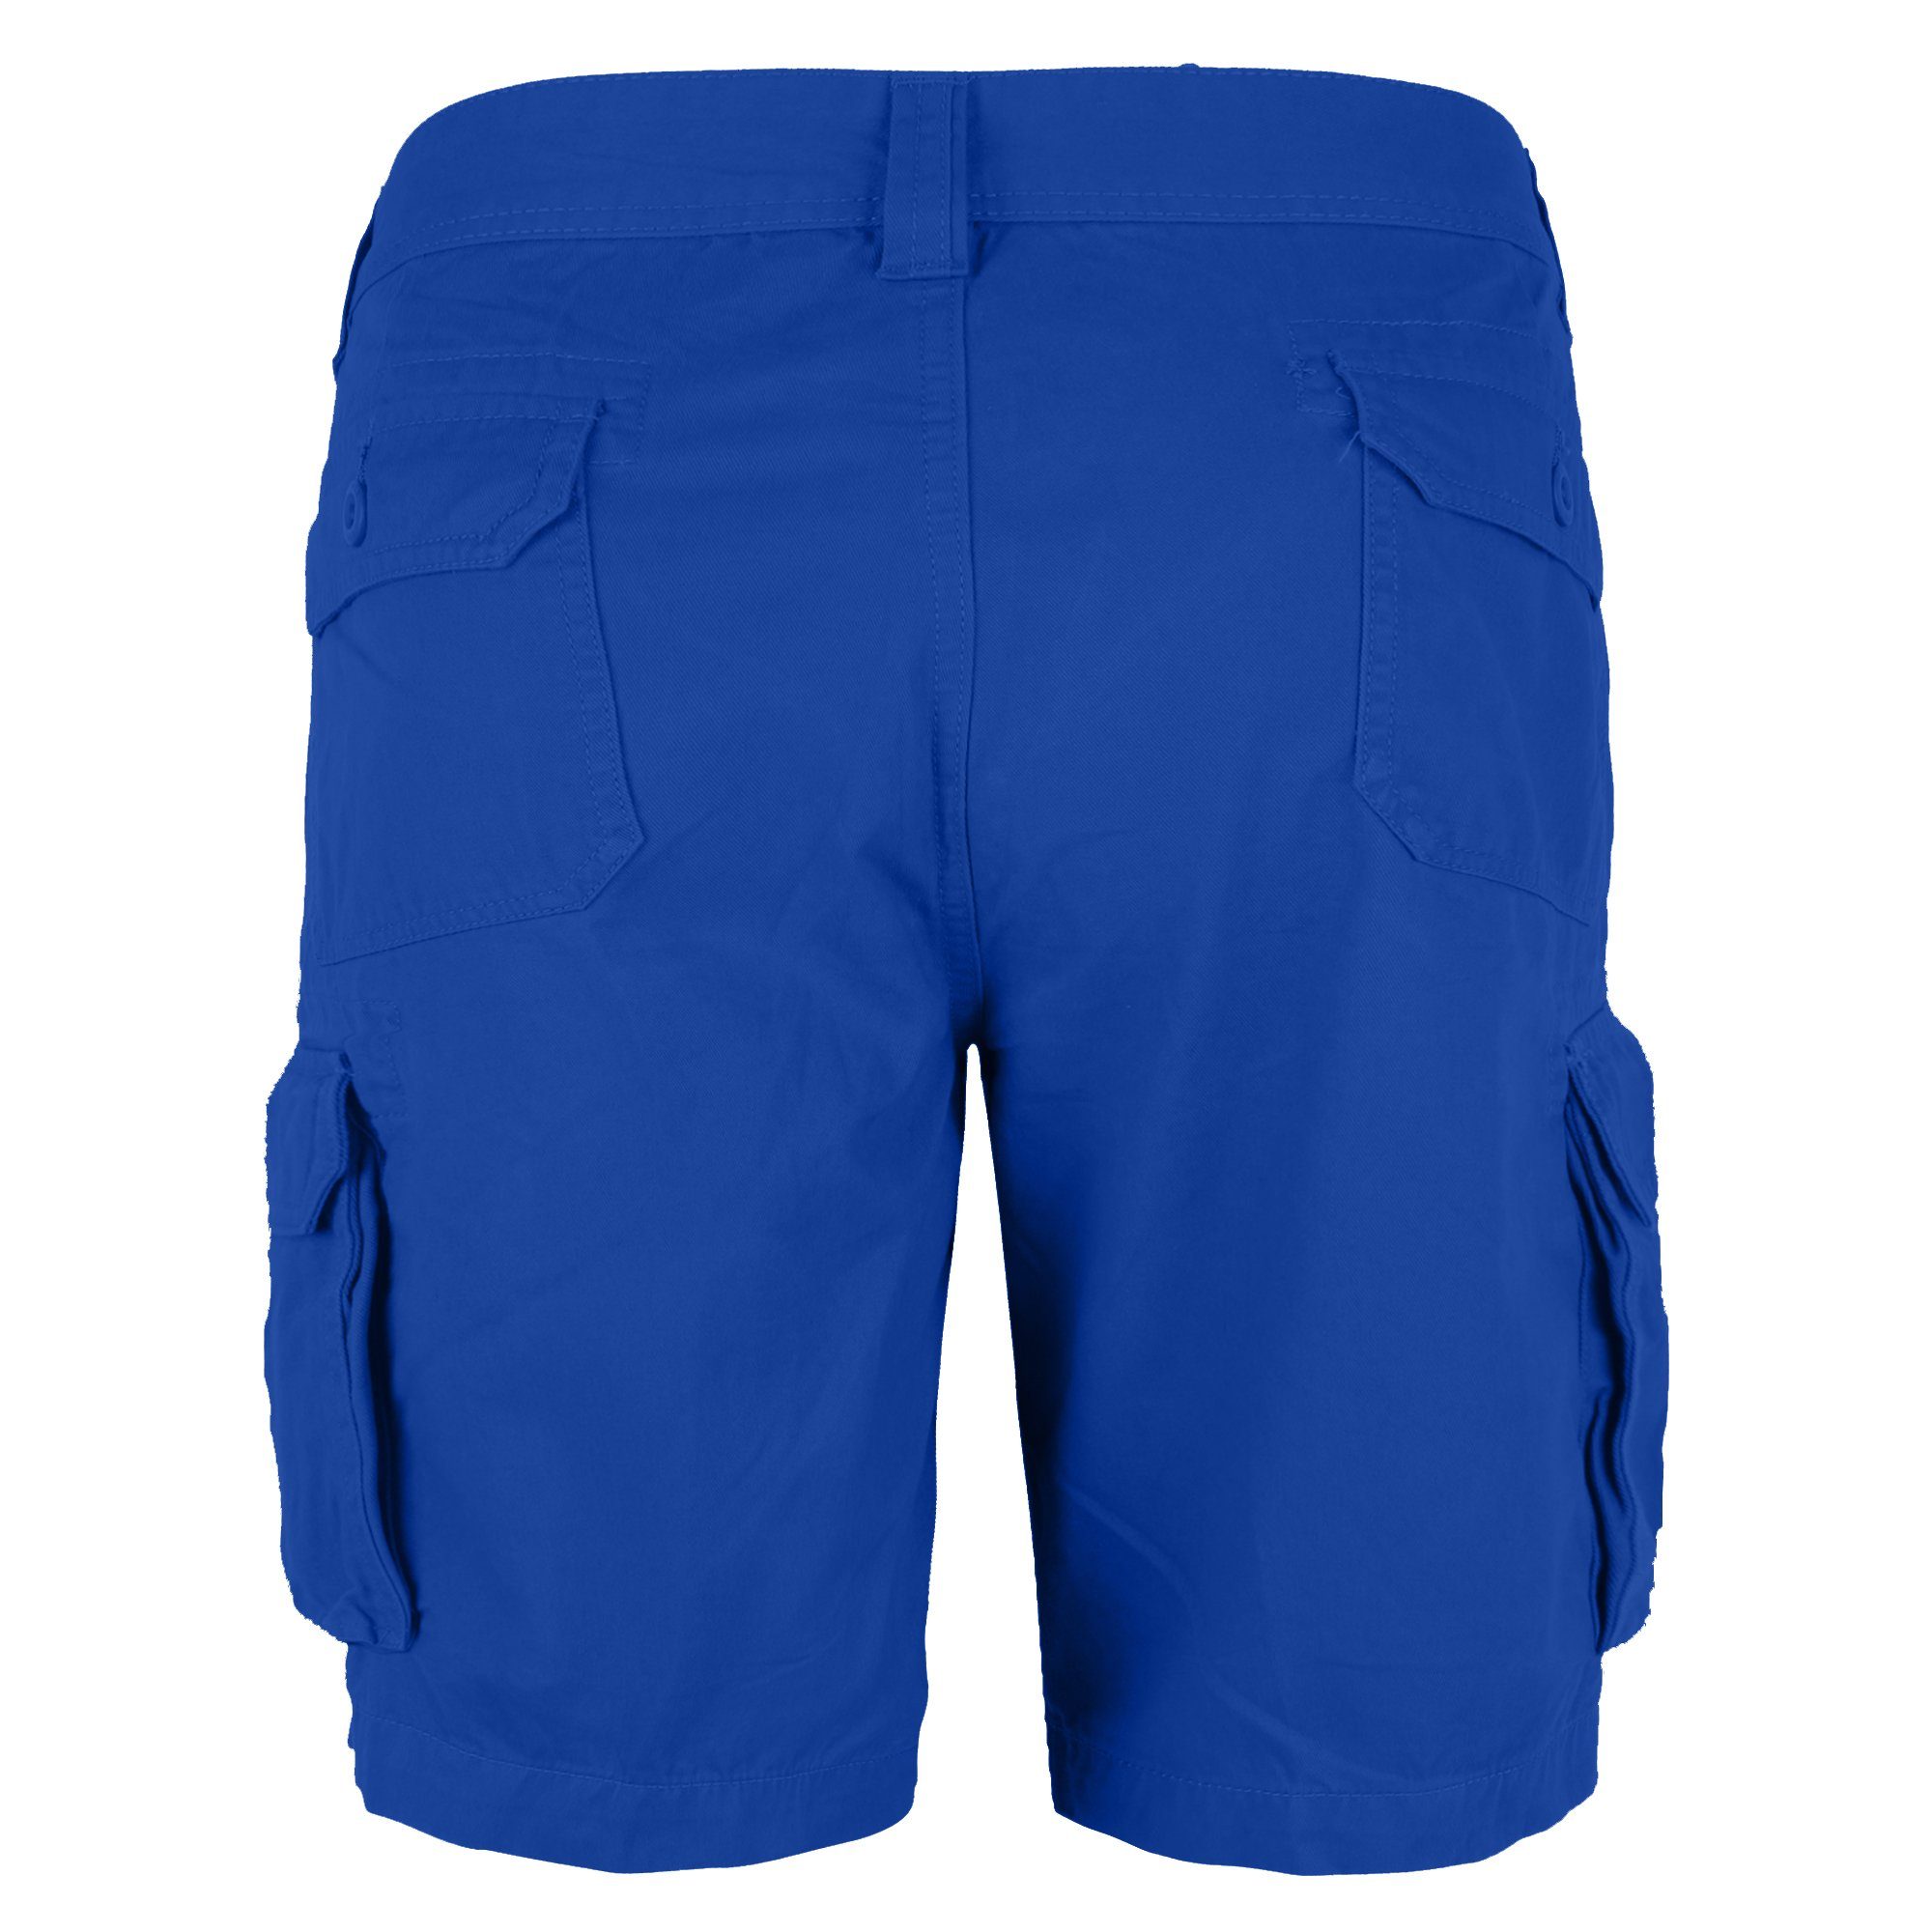 Bermuda Königsblau Baumwolle Passform Shorts Herren 100% Cargo Hose BlauerHafen Cargoshorts Normale